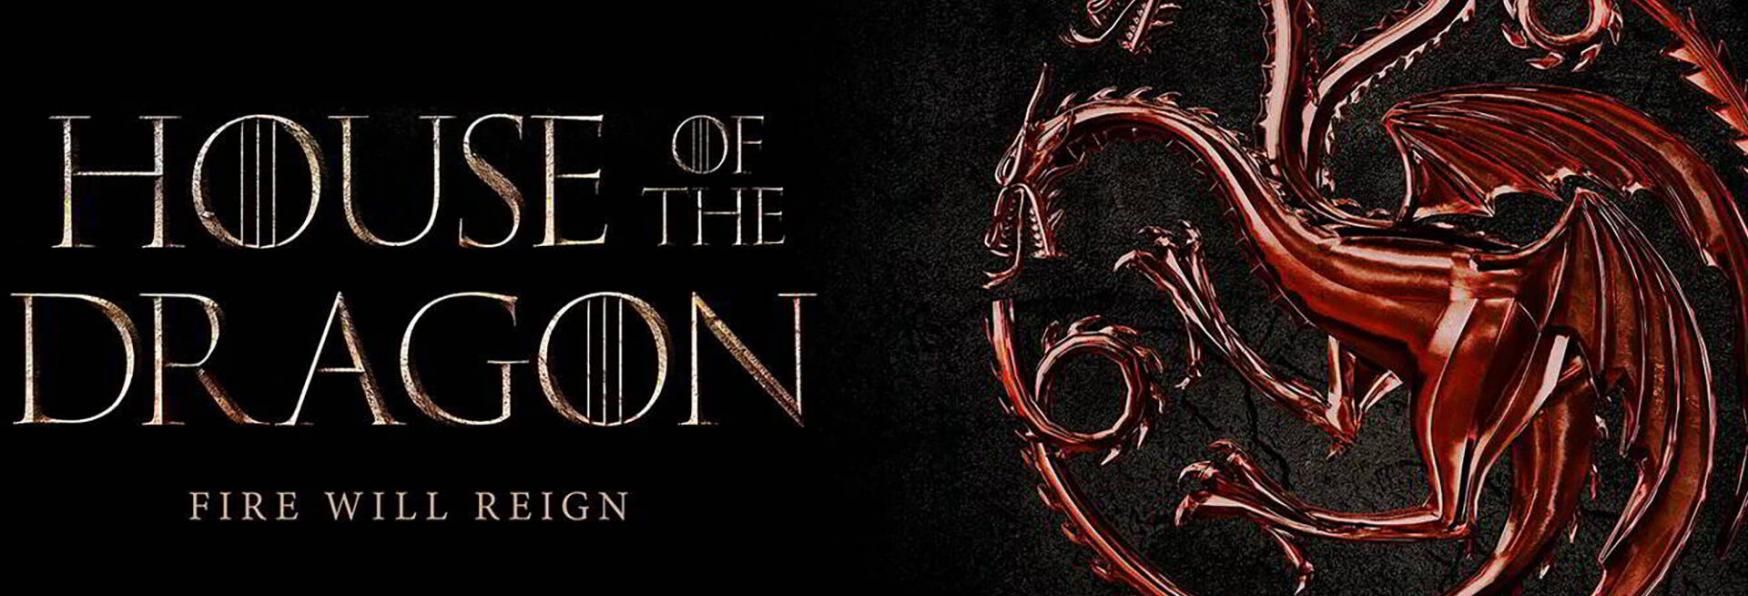 House Of The Dragon: il Primo Trailer e i Poster della Serie TV, Spin-Off di Game of Thrones